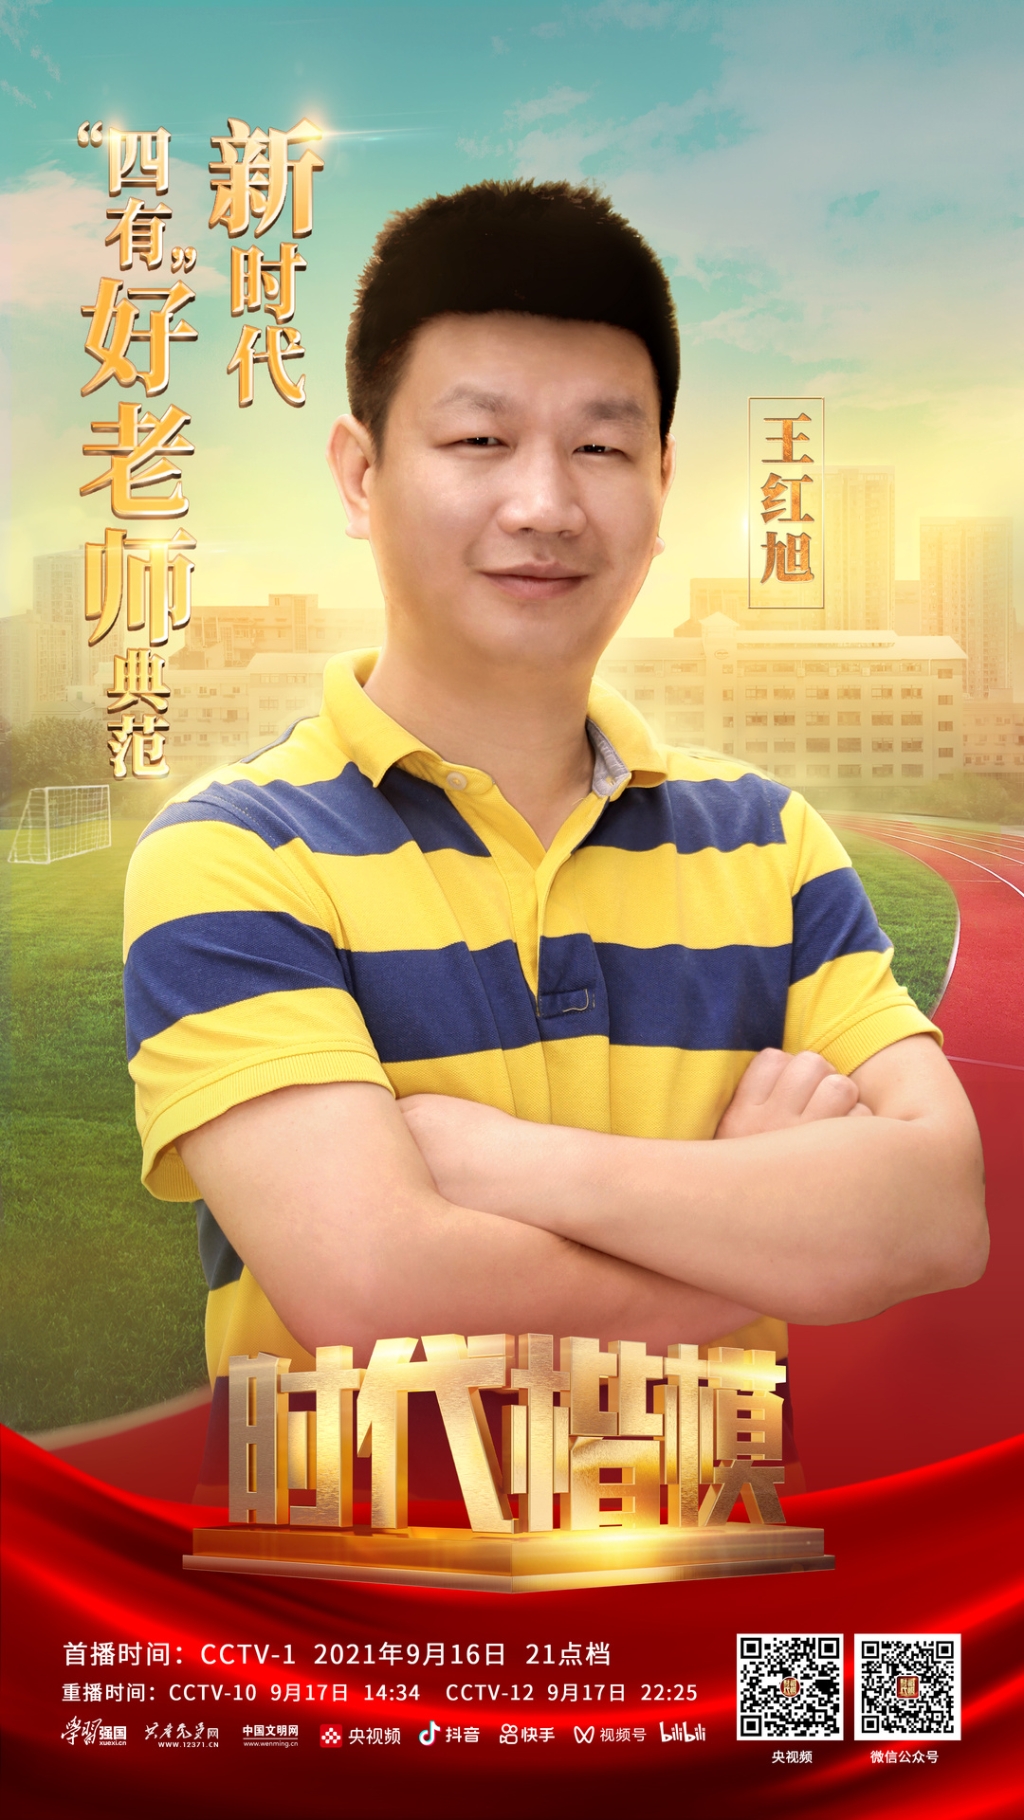 重庆市大渡口区育才小学体育教师王红旭被中宣部授予“时代楷模”称号。